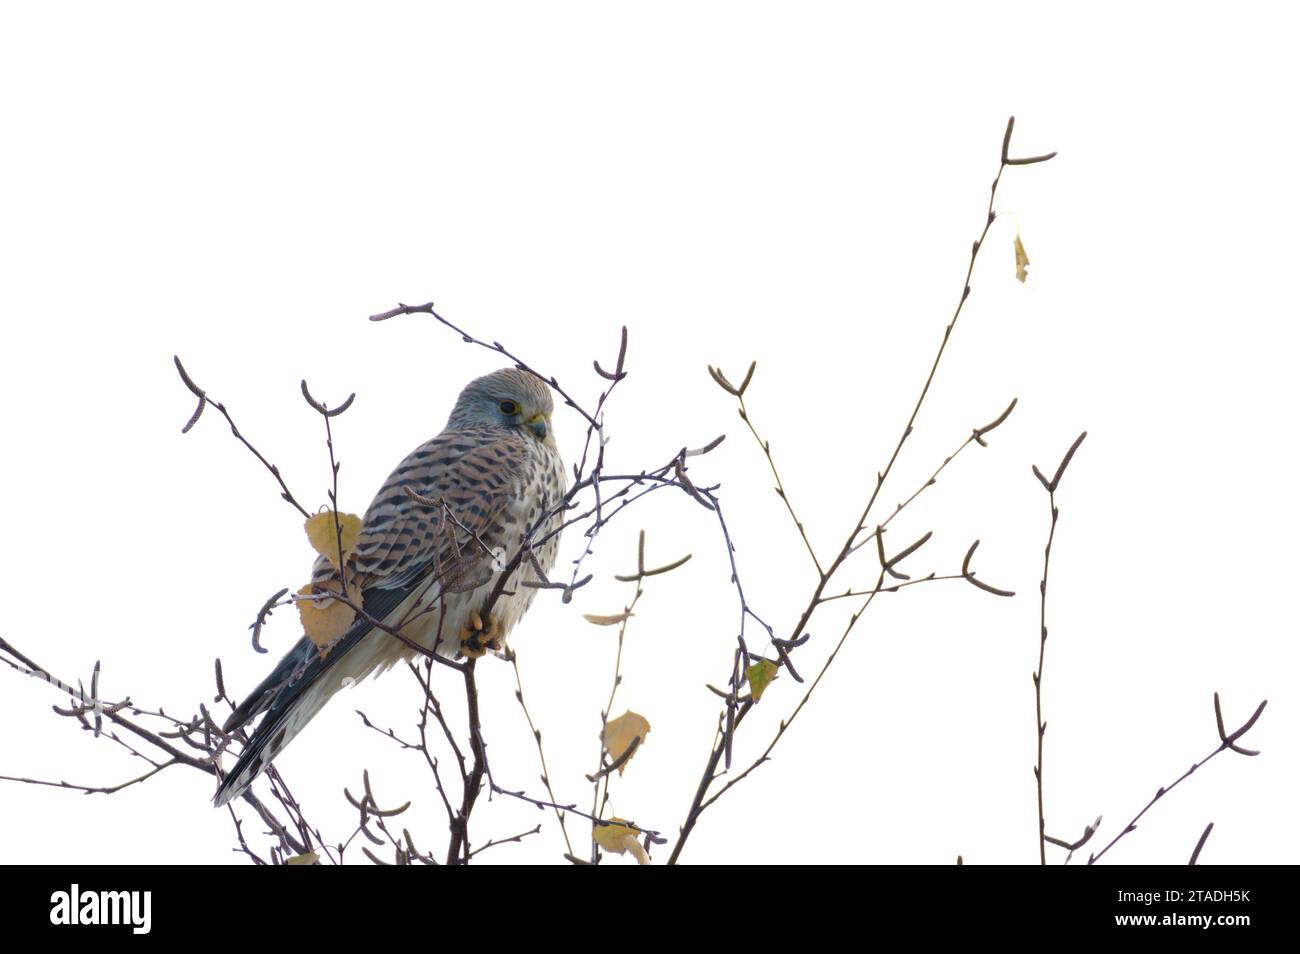 Falco tinnunculus aka le kestrel commun est assis sur le sommet de l'arbre en hiver. Très bel oiseau de proie coloré, assez commun en république tchèque. Banque D'Images